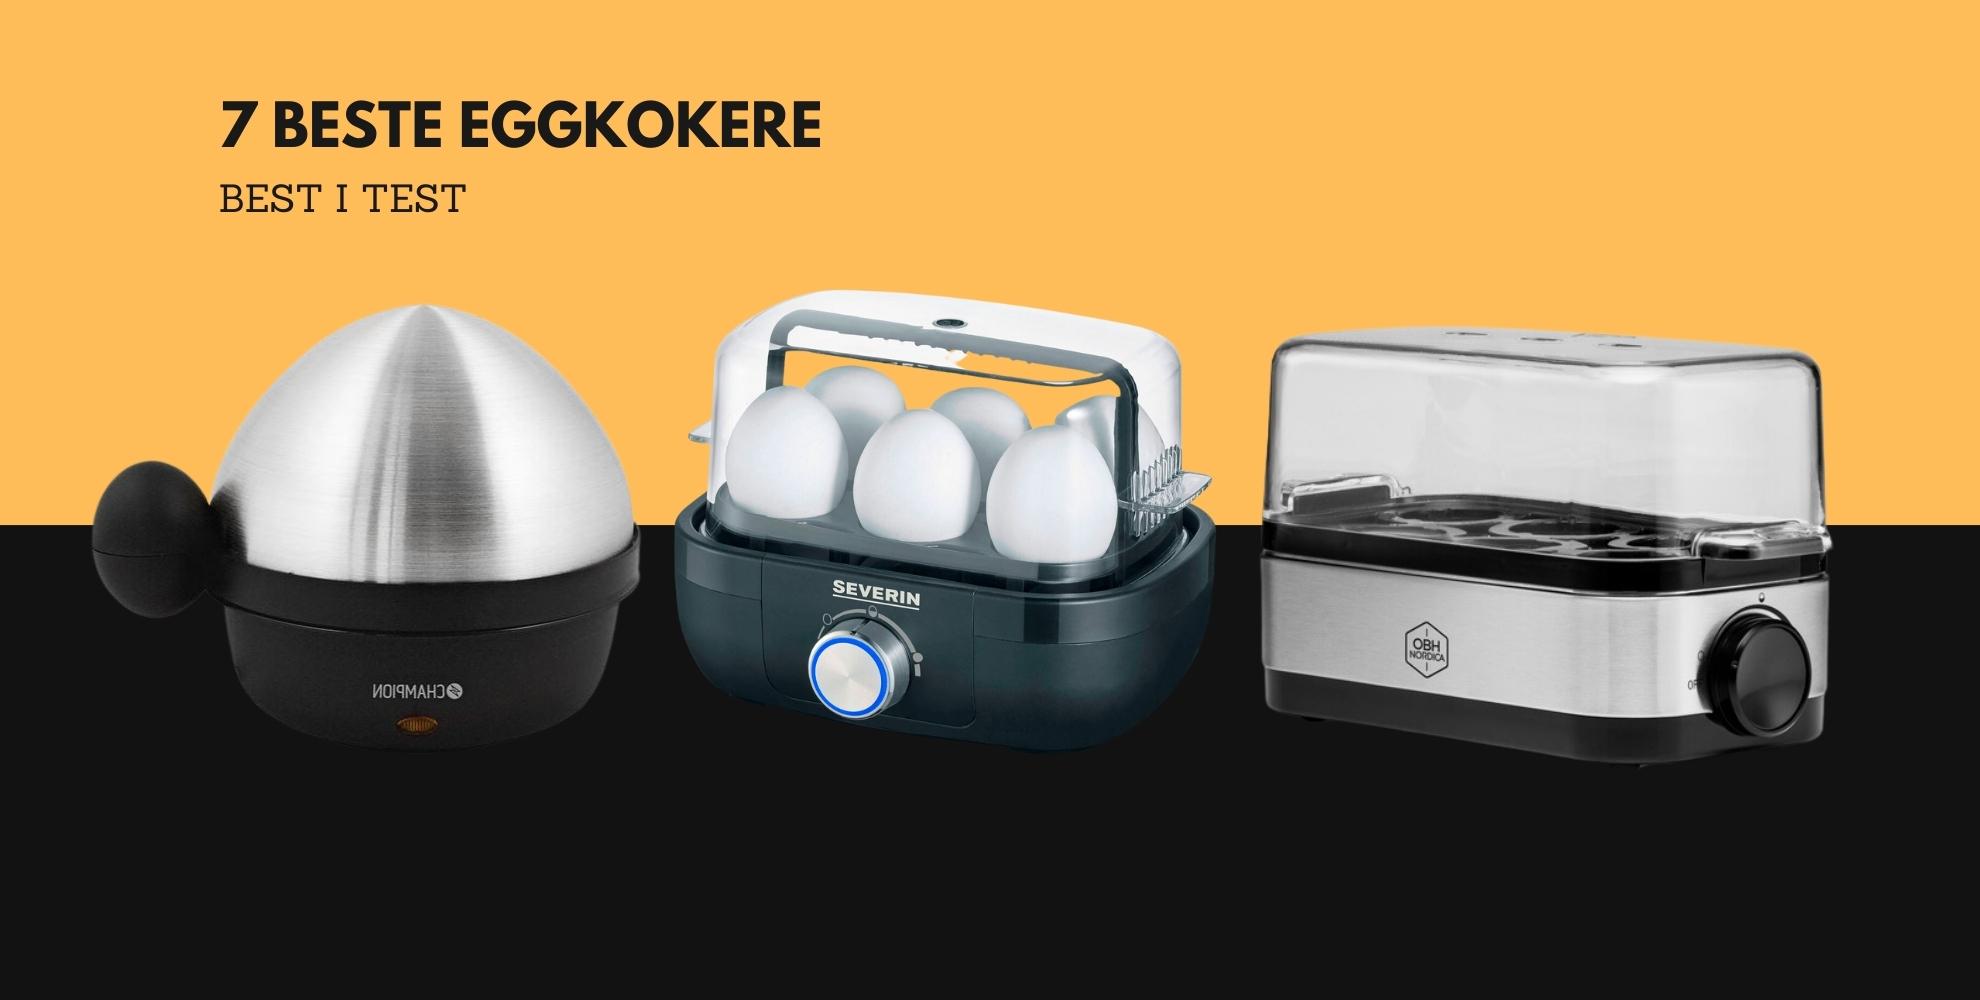 Bilde av norges beste eggkokere, med tekst 7 beste eggkokere, best i test